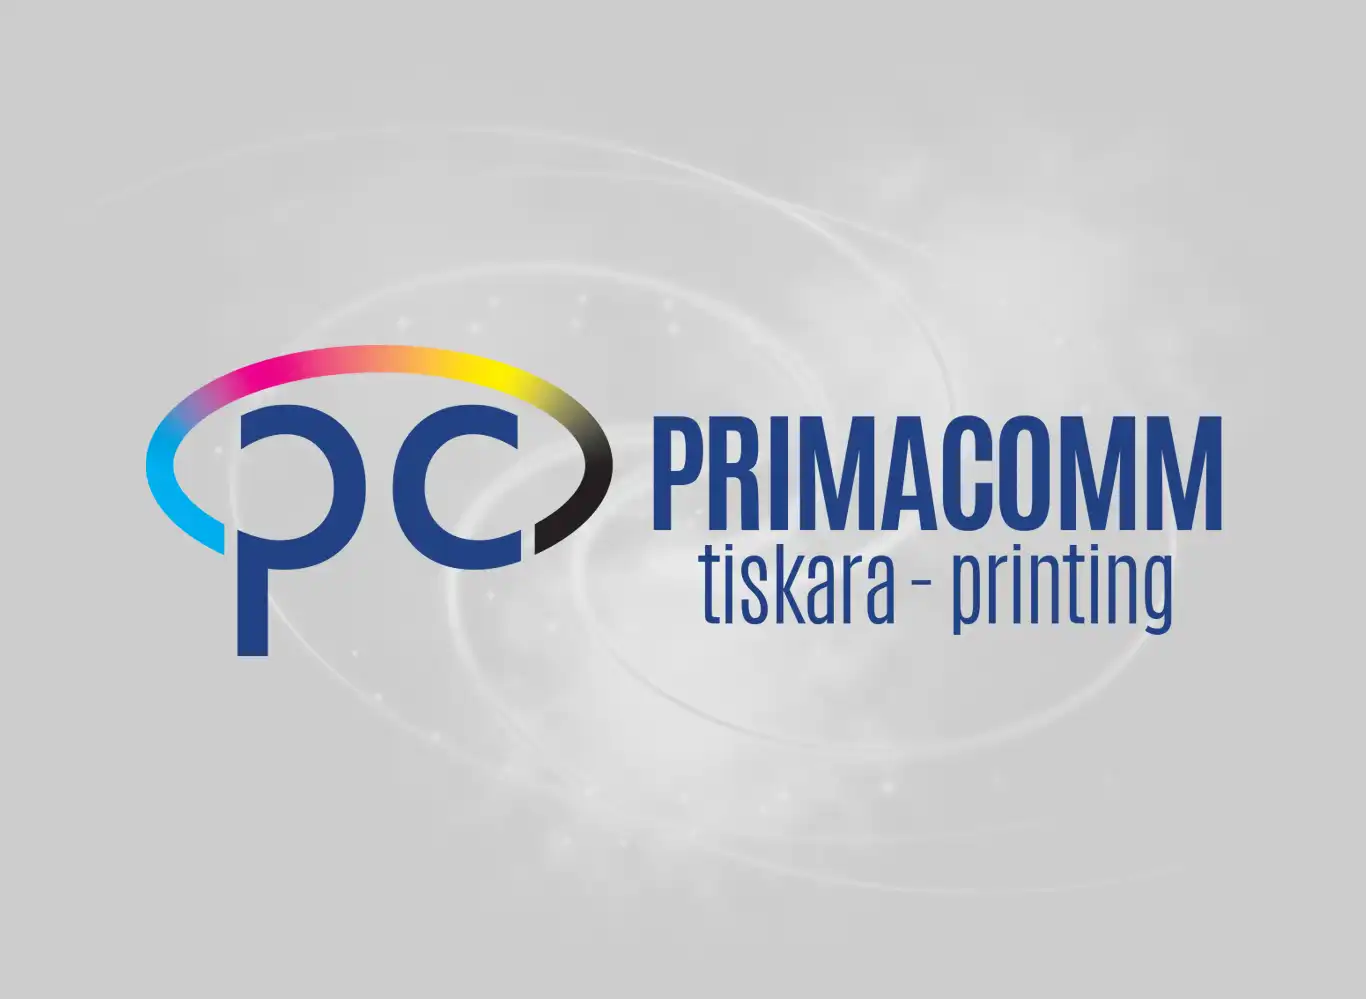 Redizajn postojećeg logotipa tvrtke Primacomm doo